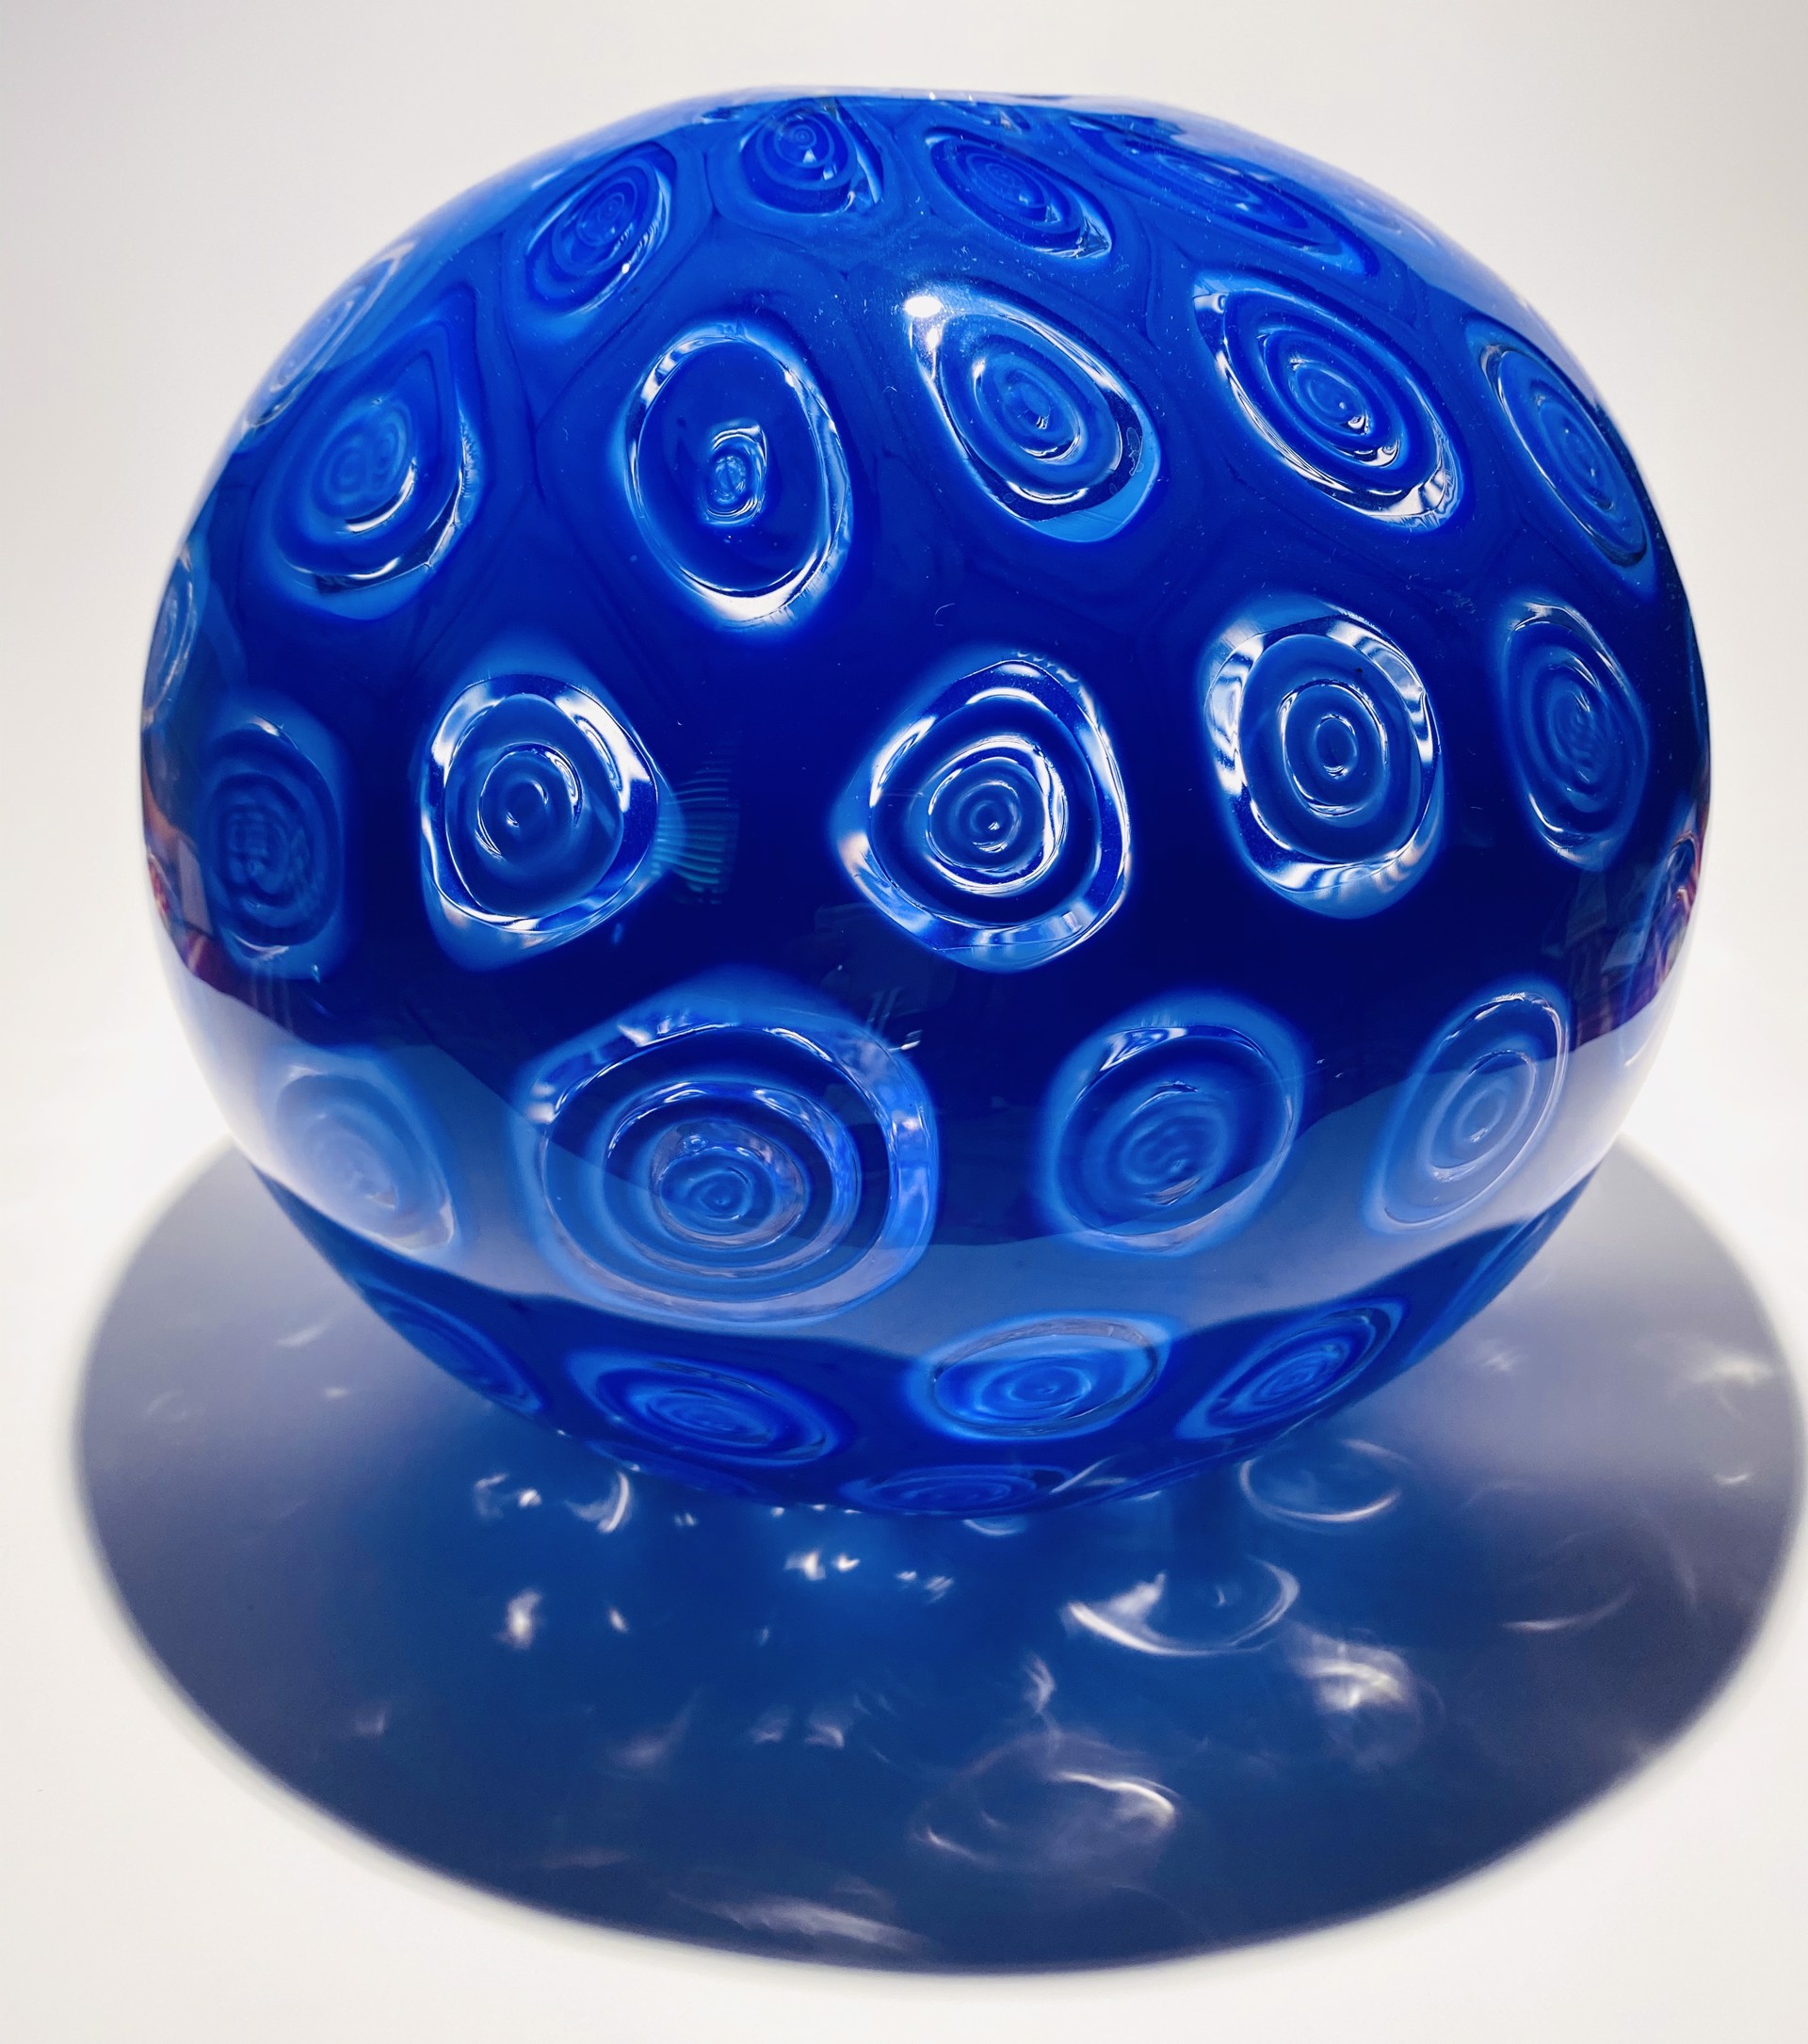 Vase-Blue Millefiori Spherical, JG1 by John Glass